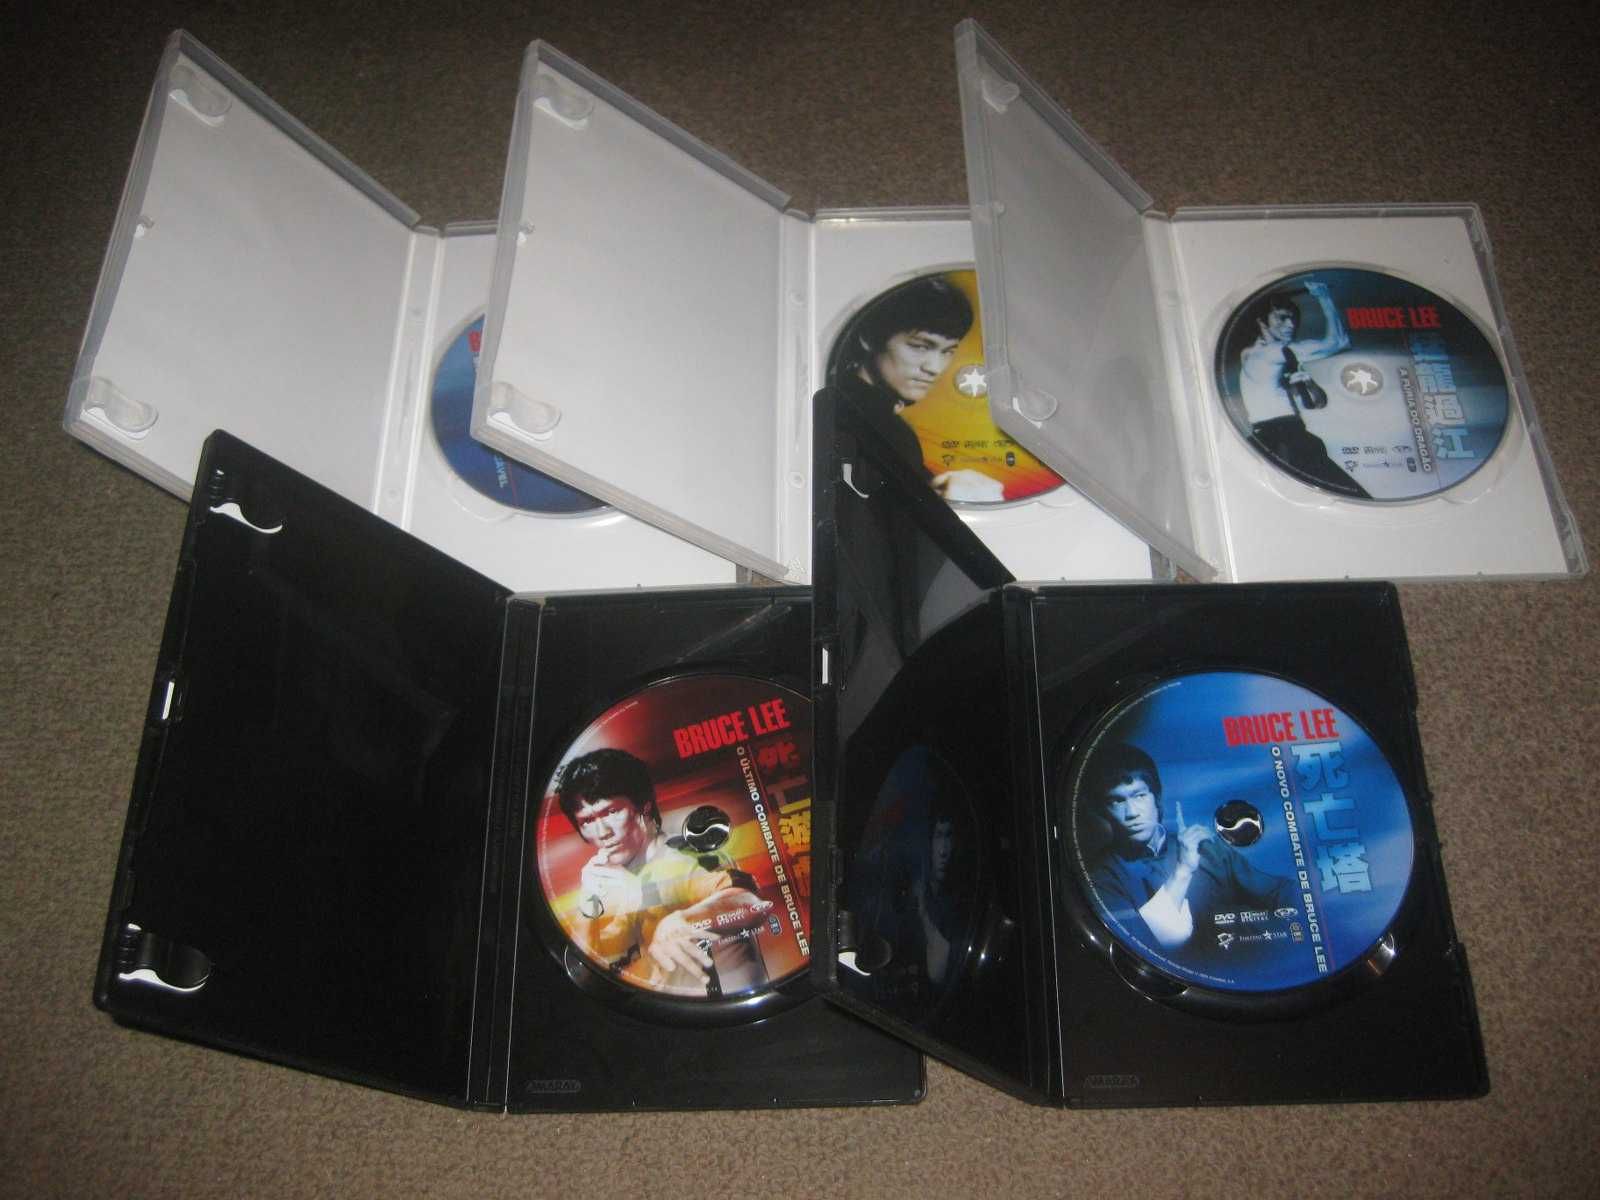 5 Filmes em DVD com Bruce Lee